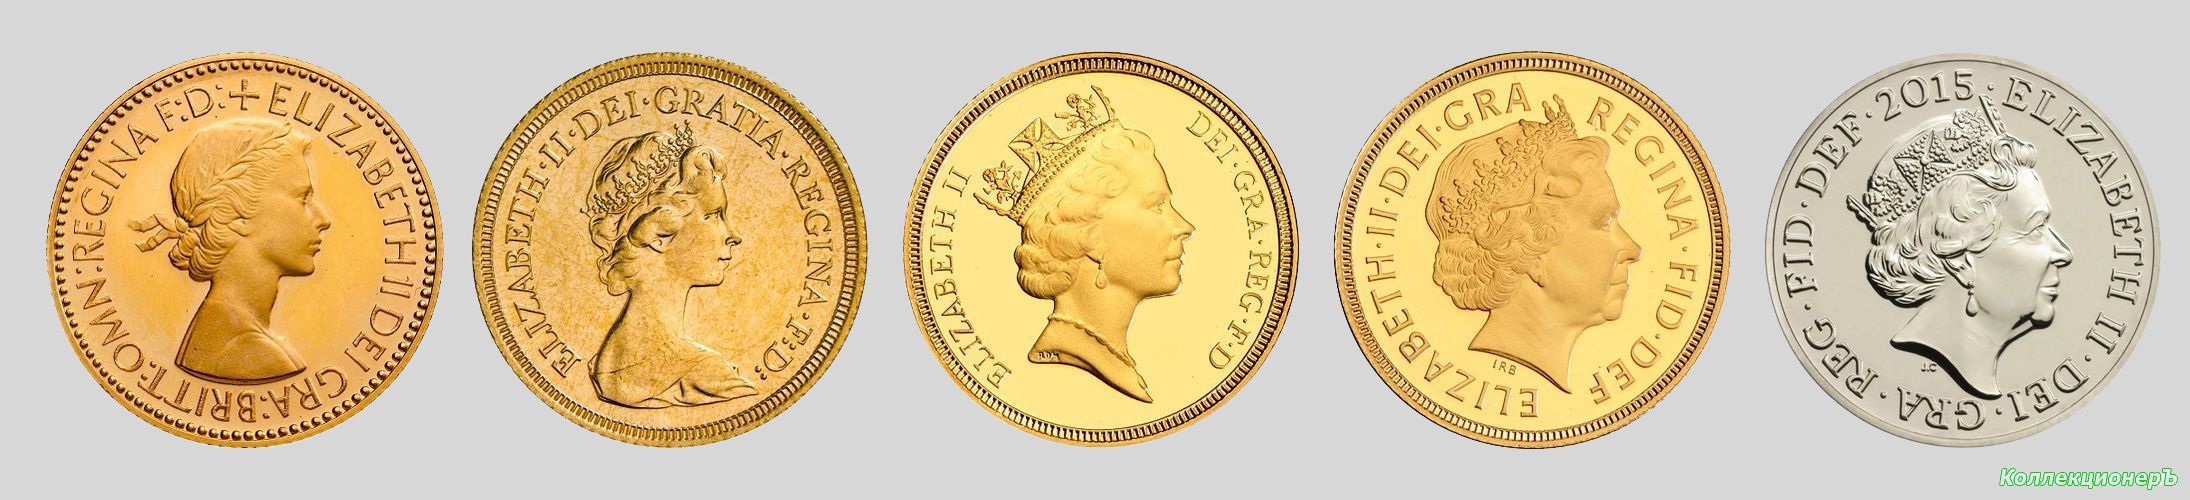 Типы монет с портретом Елизаветы II